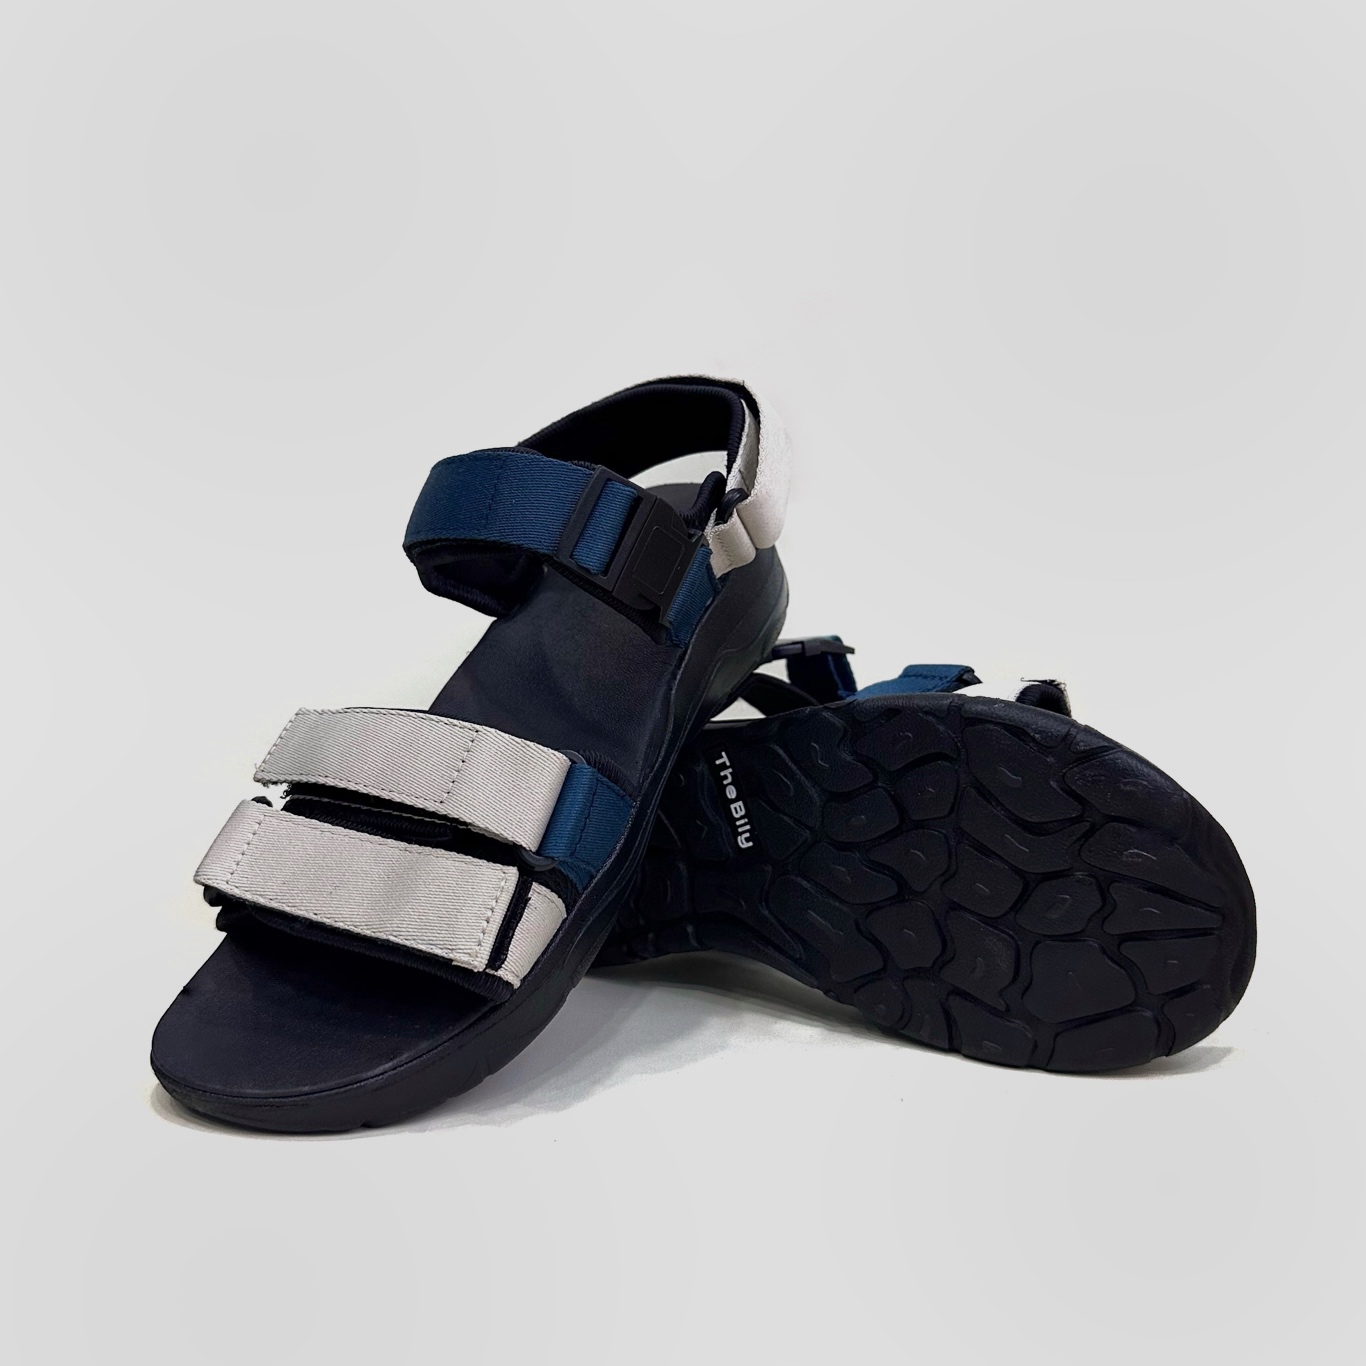 Giày Sandal Nam Nữ Unisex The BiLy Quai Ngang Dây Dù Đế IP Siêu Êm Nhẹ Màu Xanh Trắng-BL05